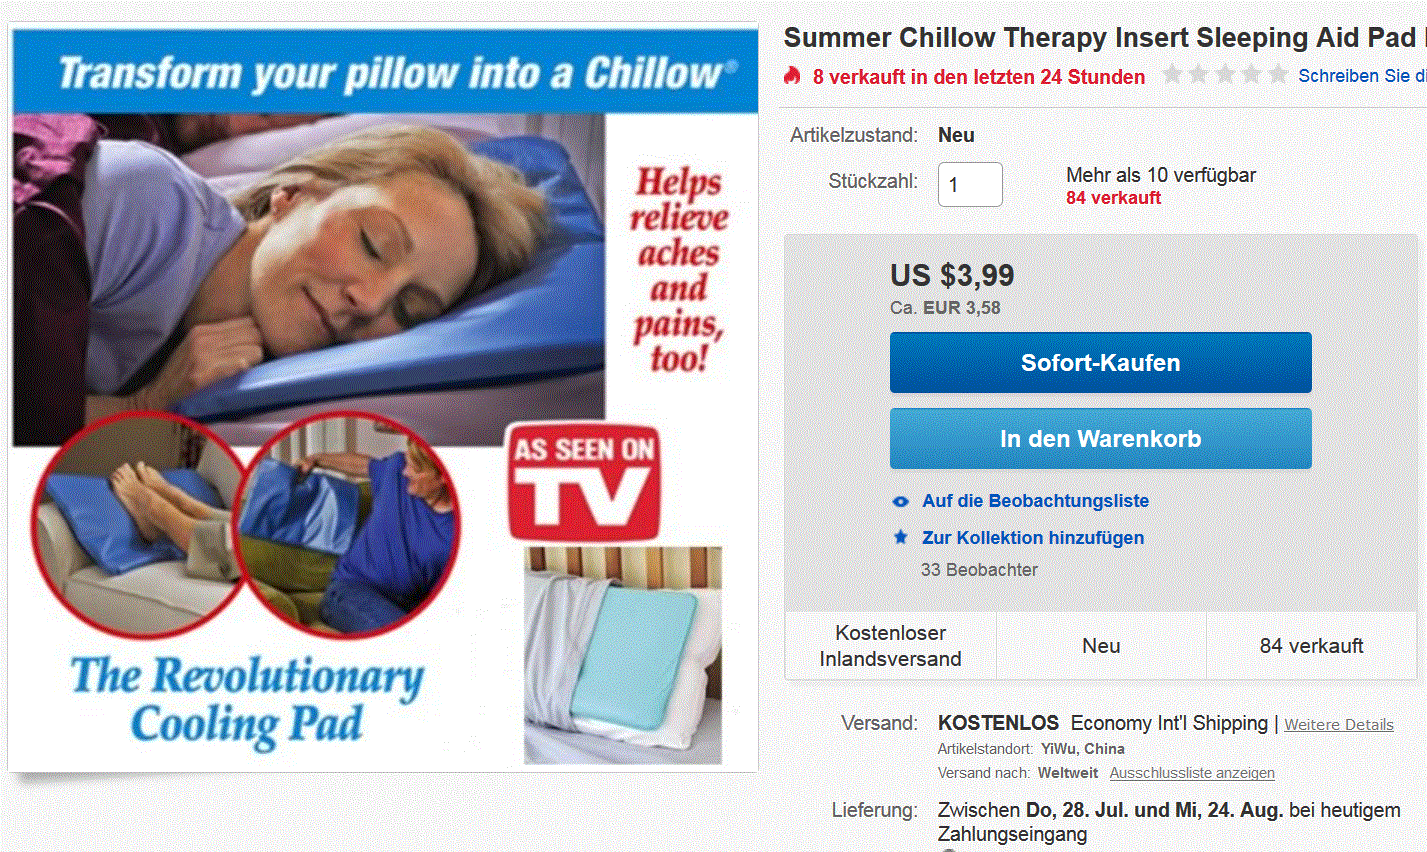 Immer ein schön kühles Kopfkissen im Sommer? Mit diesem Gadget (der Chinese nennt es „Chillow“) schlaft ihr besser!